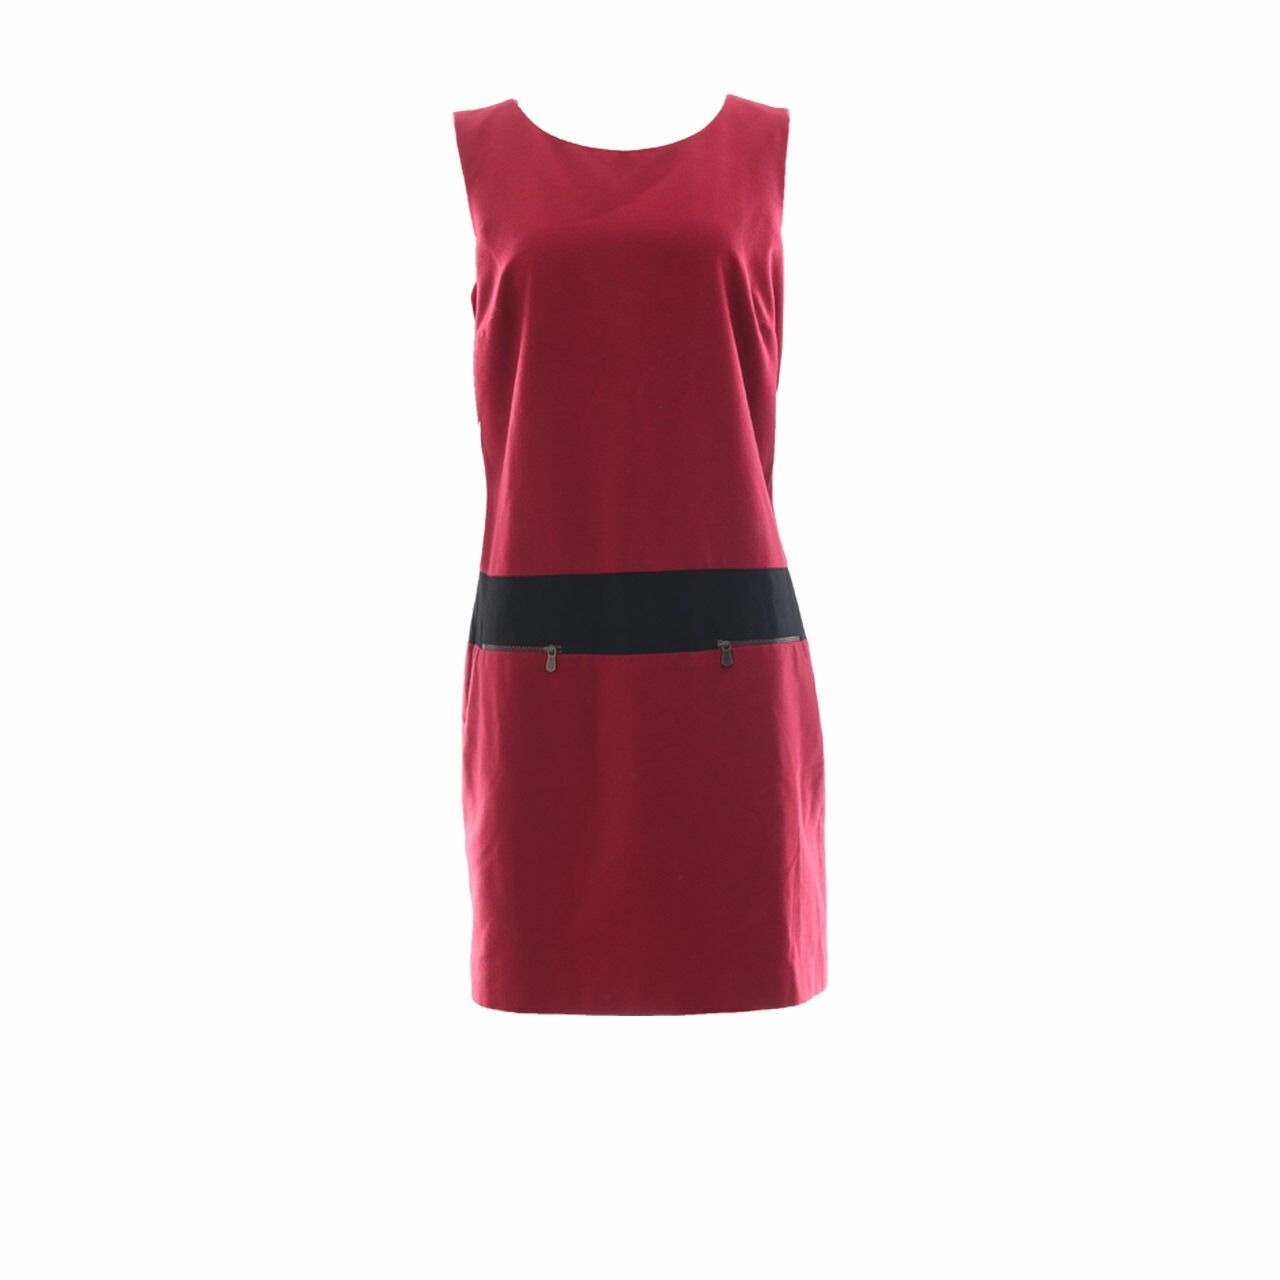 Mexx Red Zipper Mini Dress